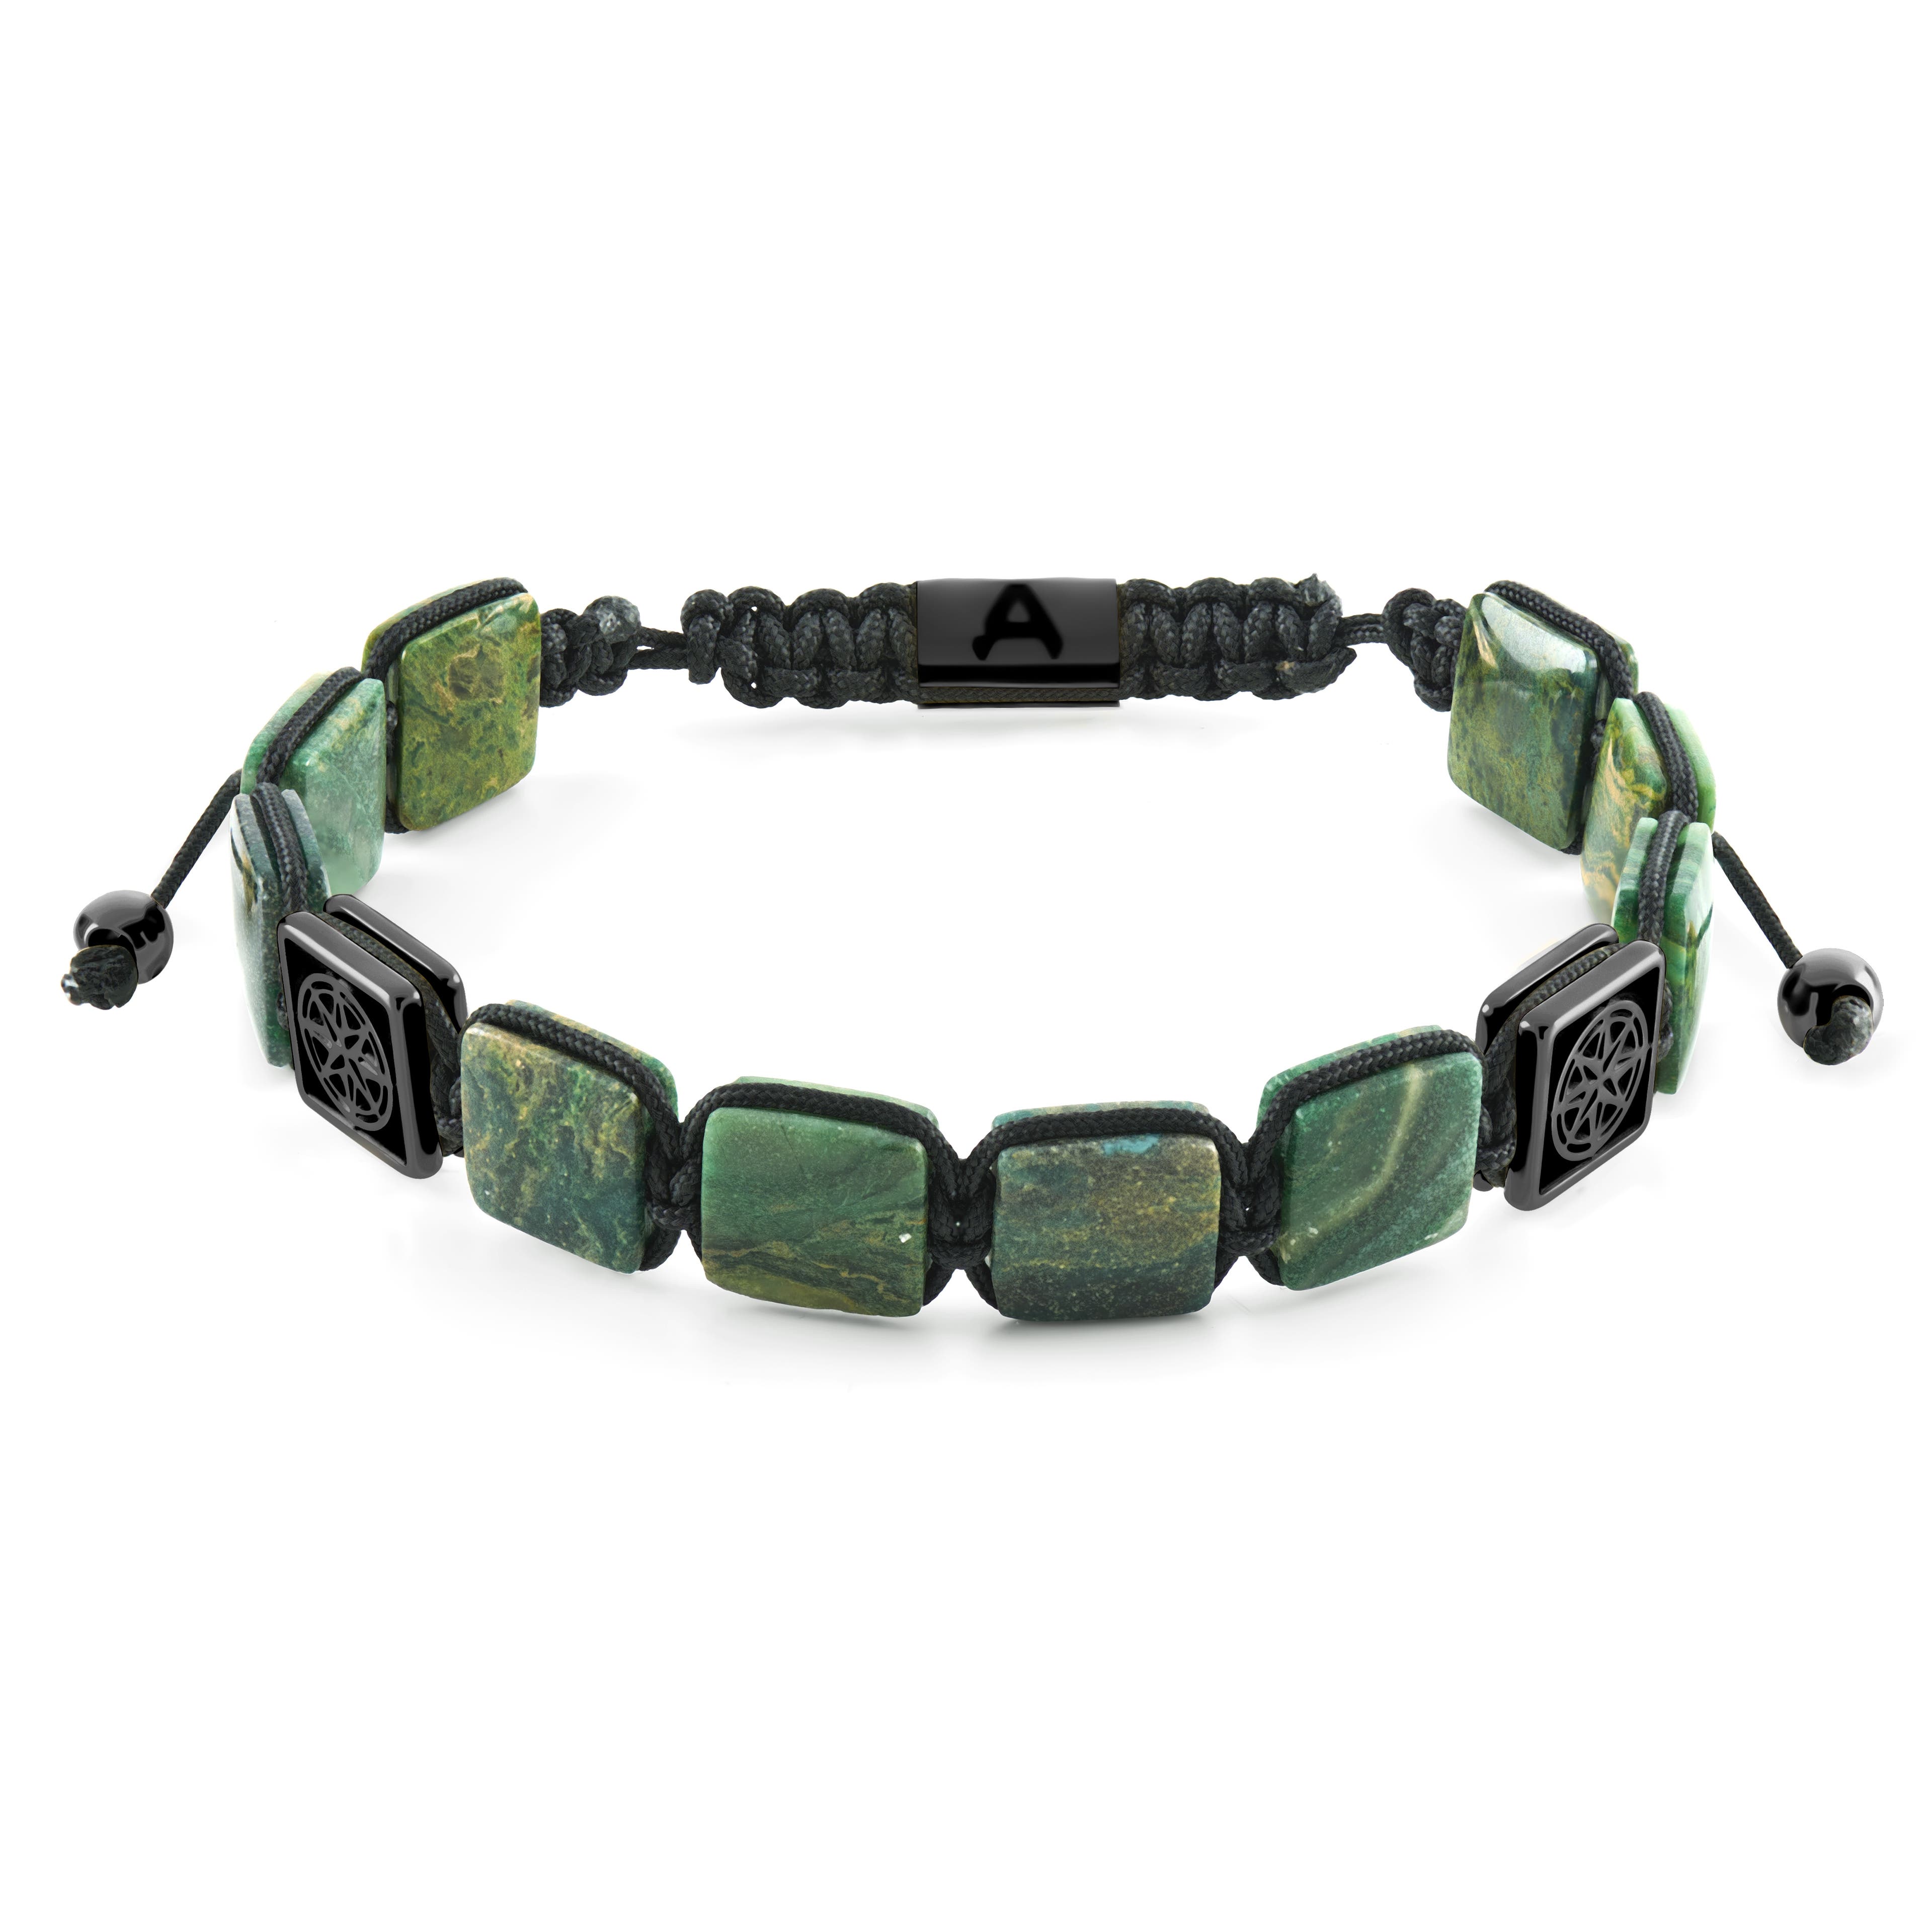 Elysian | Bracelet en perles plates noires avec œil de tigre vert